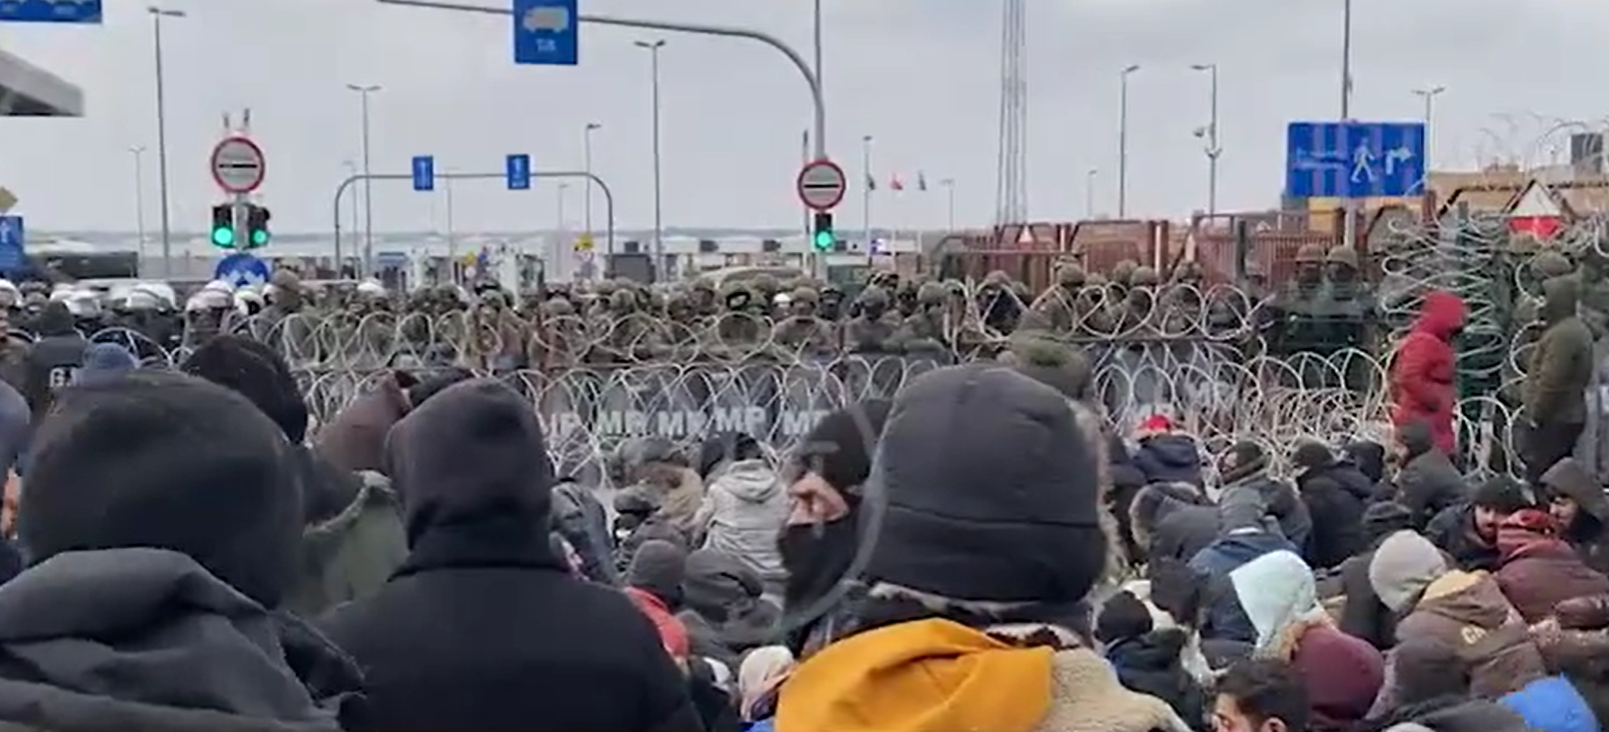 Мигранты штурмуют пункт перехода - устоят ли польские пограничники - фото 2